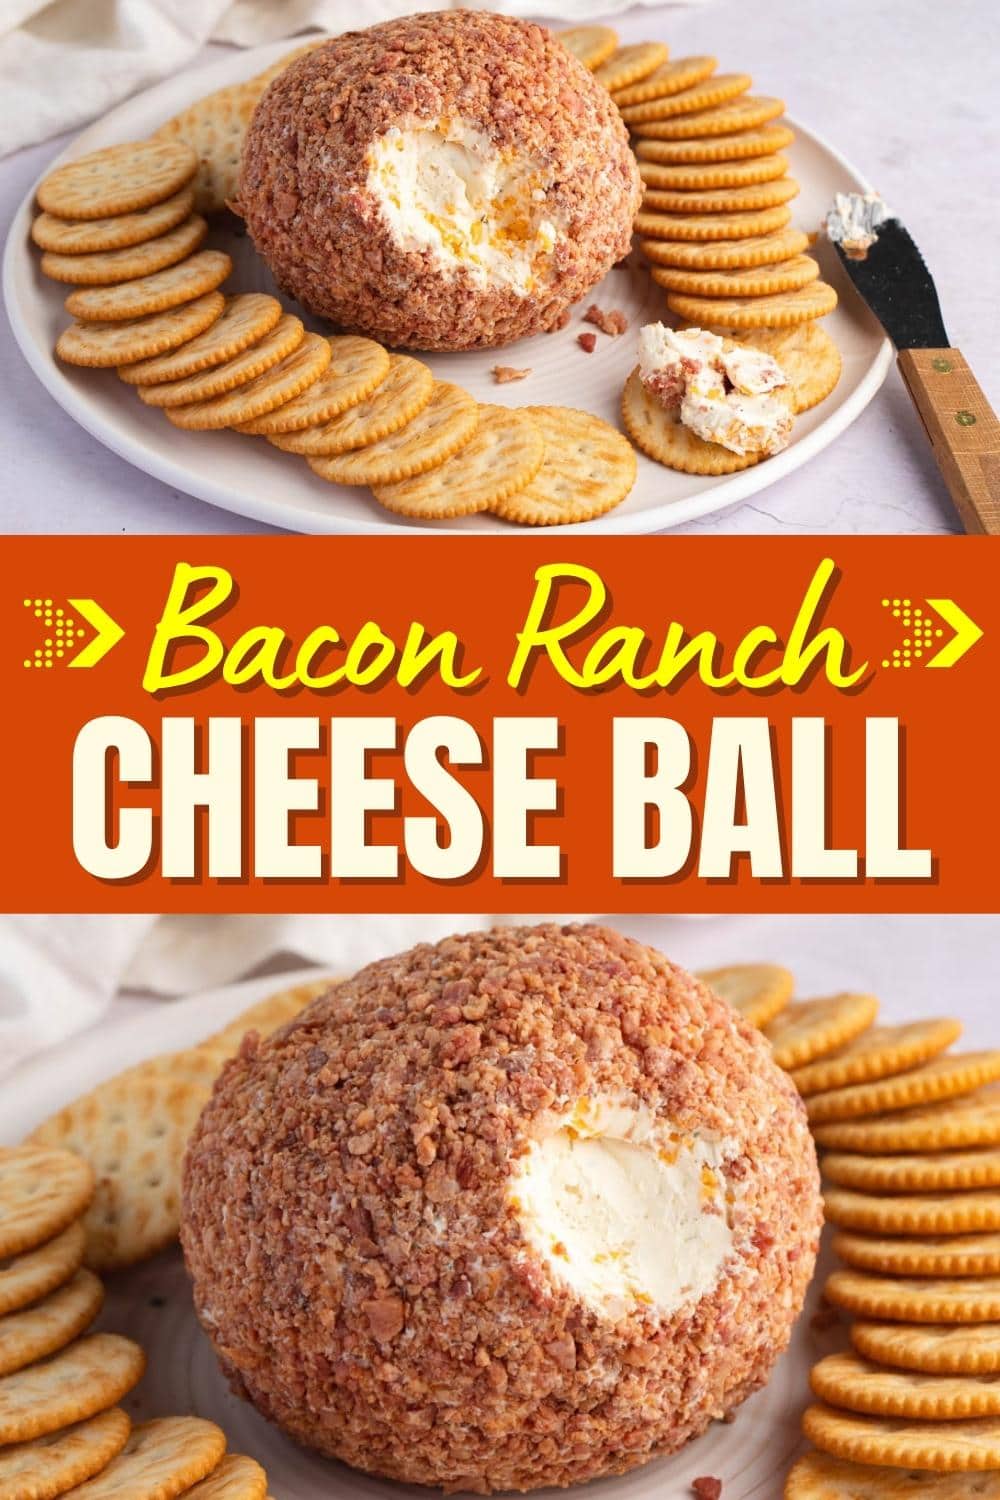 Bacon Ranch Cheese Ball